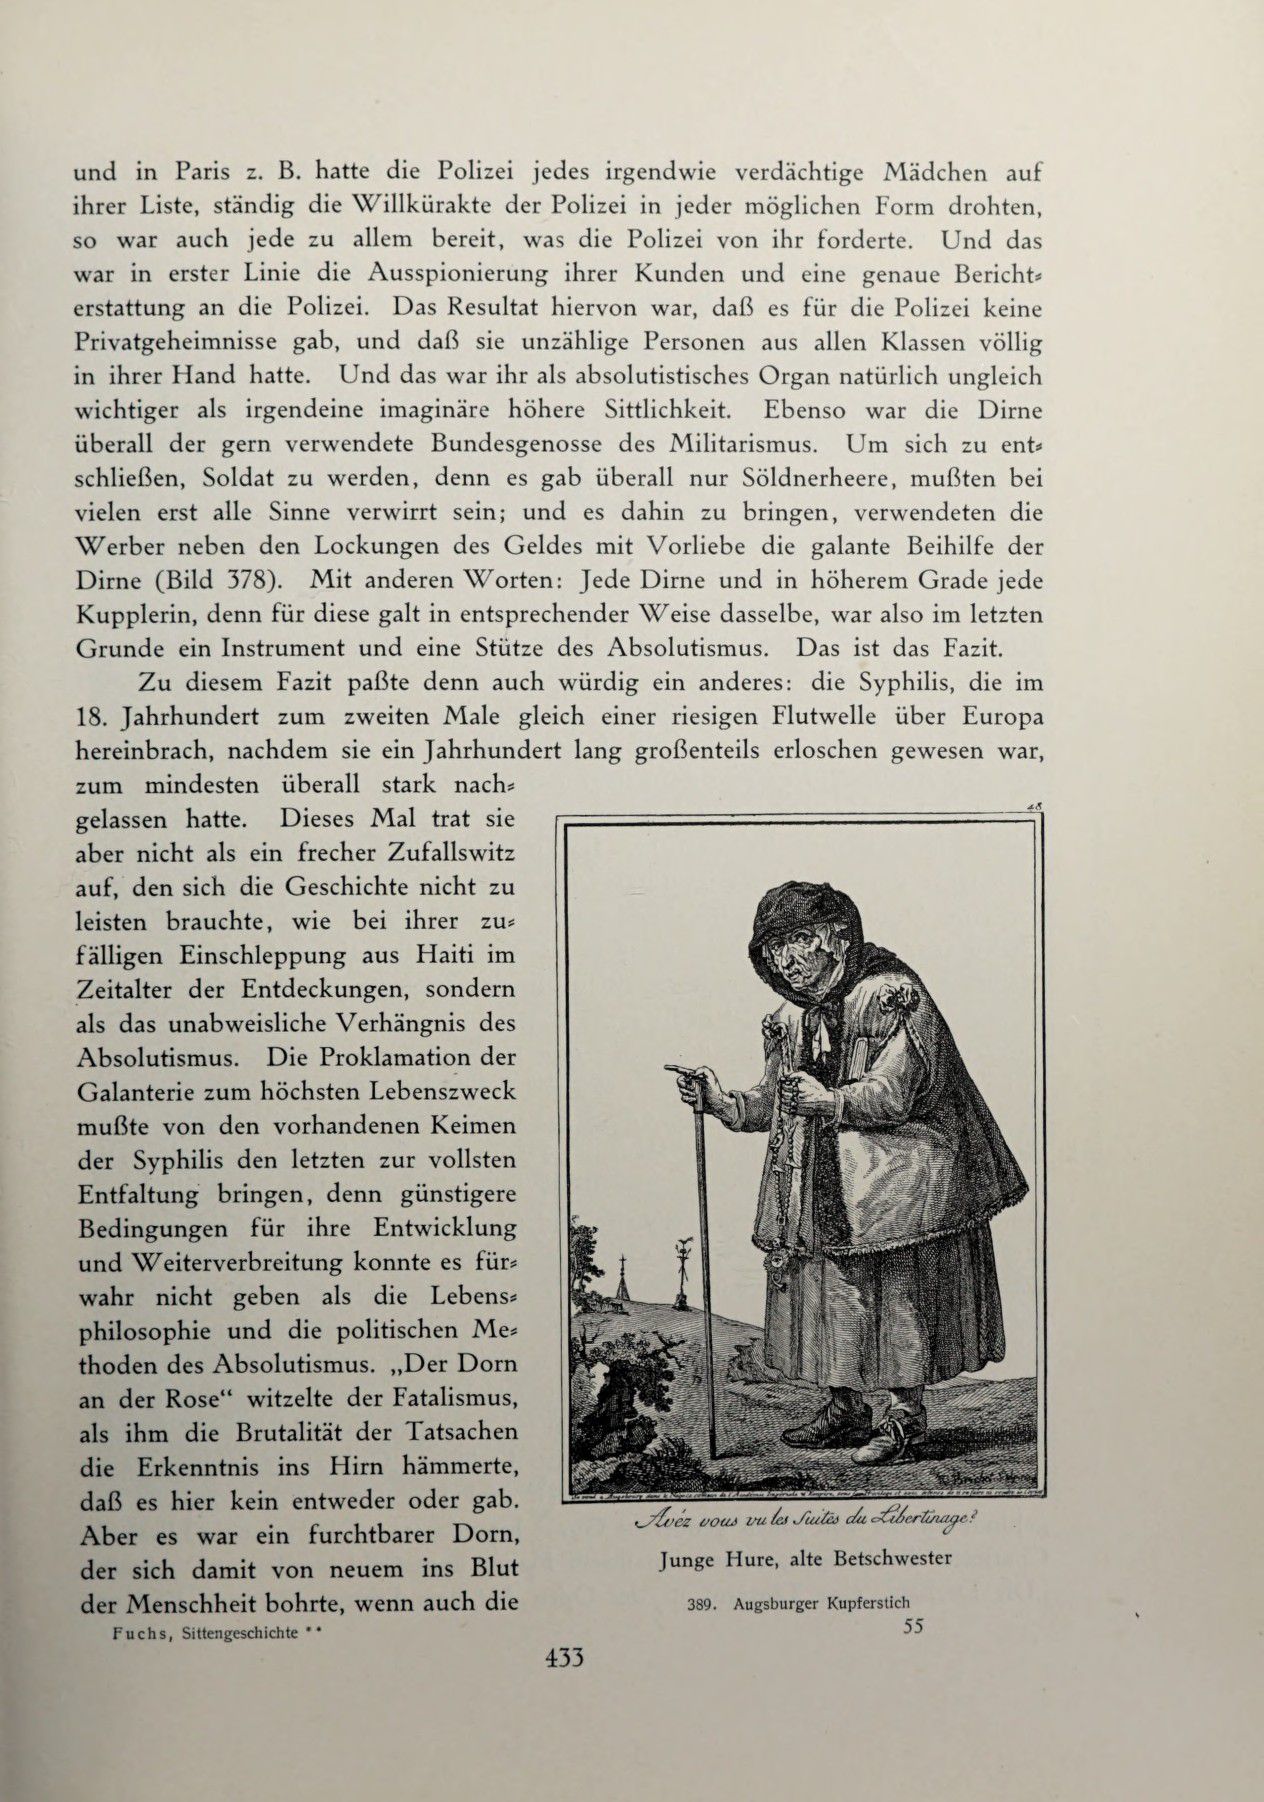 [Eduard Fuchs] Illustrierte Sittengeschichte vom Mittelalter bis zur Gegenwart: Bd. 2. and Ergänzungsband. Die galante Zeit [German] 622